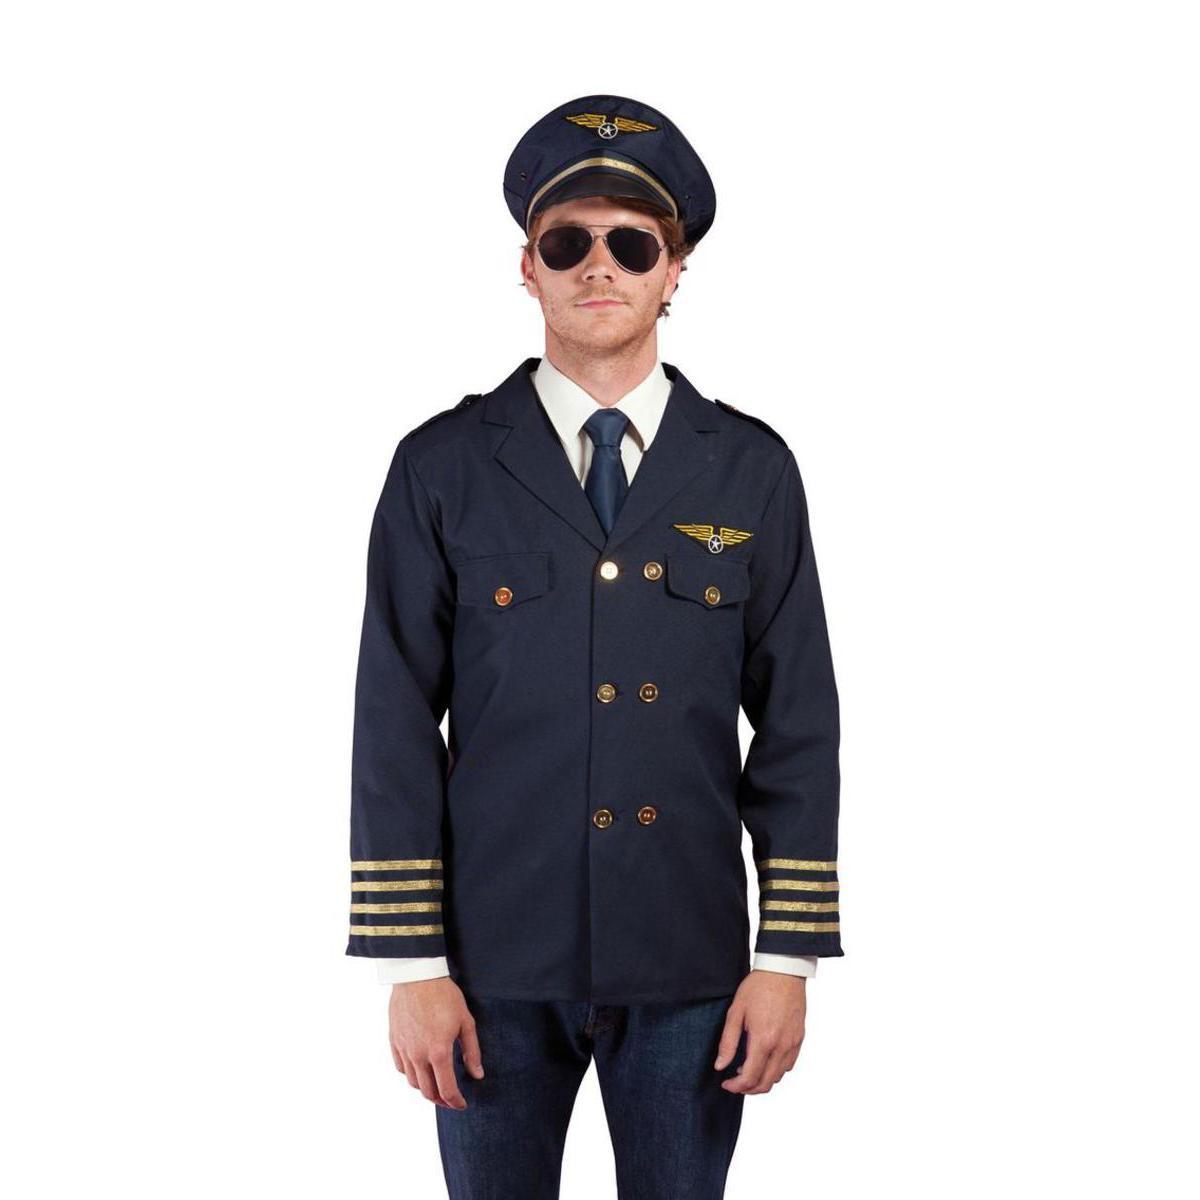 Costume adulte pilote de l'air en polyester - Taille unique - Bleu